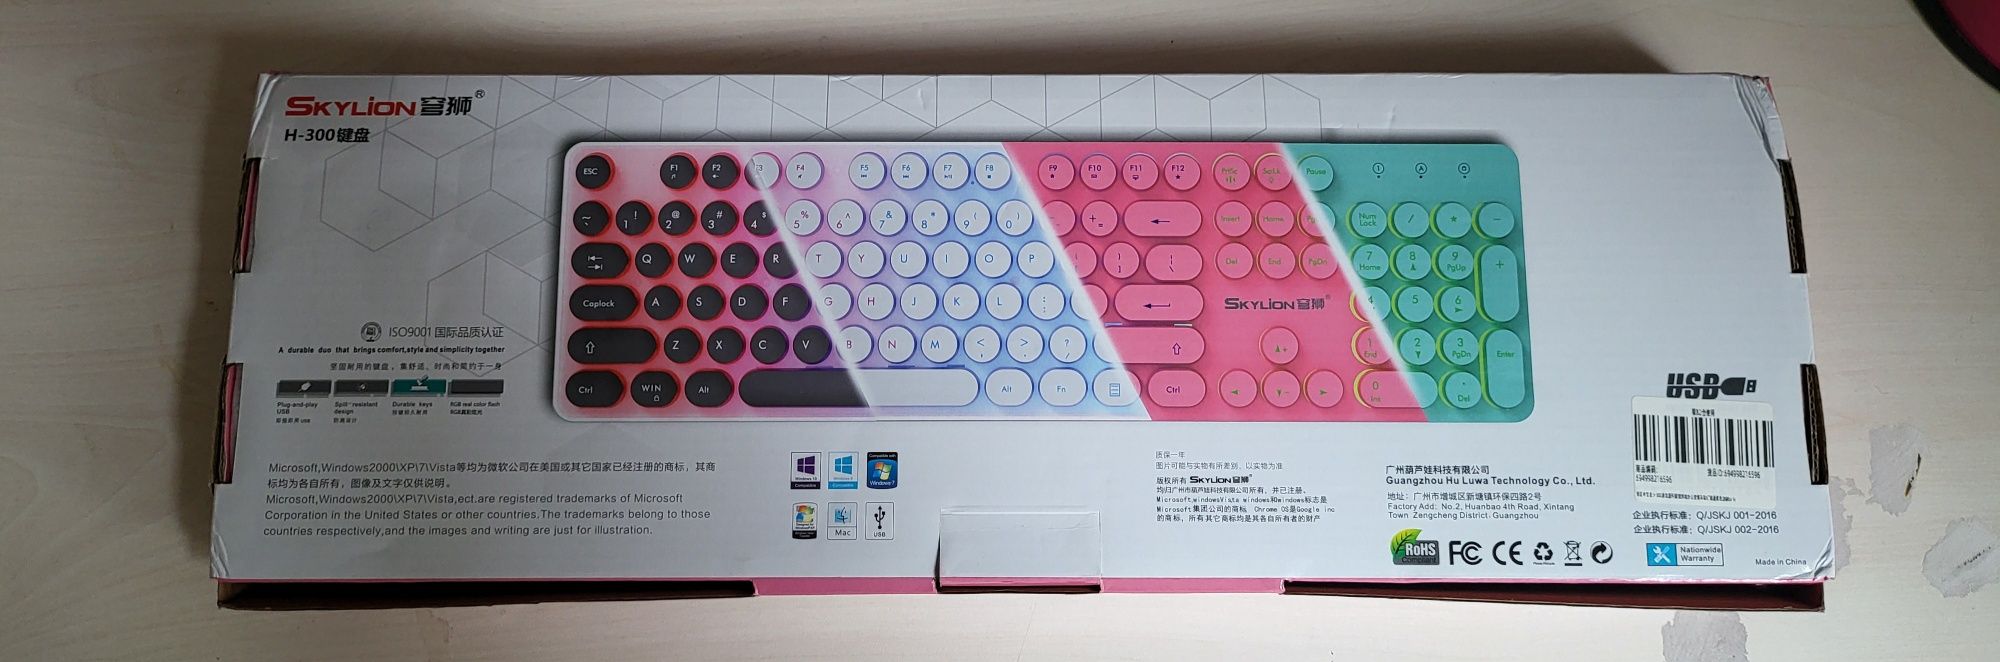 Механічна клавіатура з RGB підсвіткою SkyLion H-300 Punk